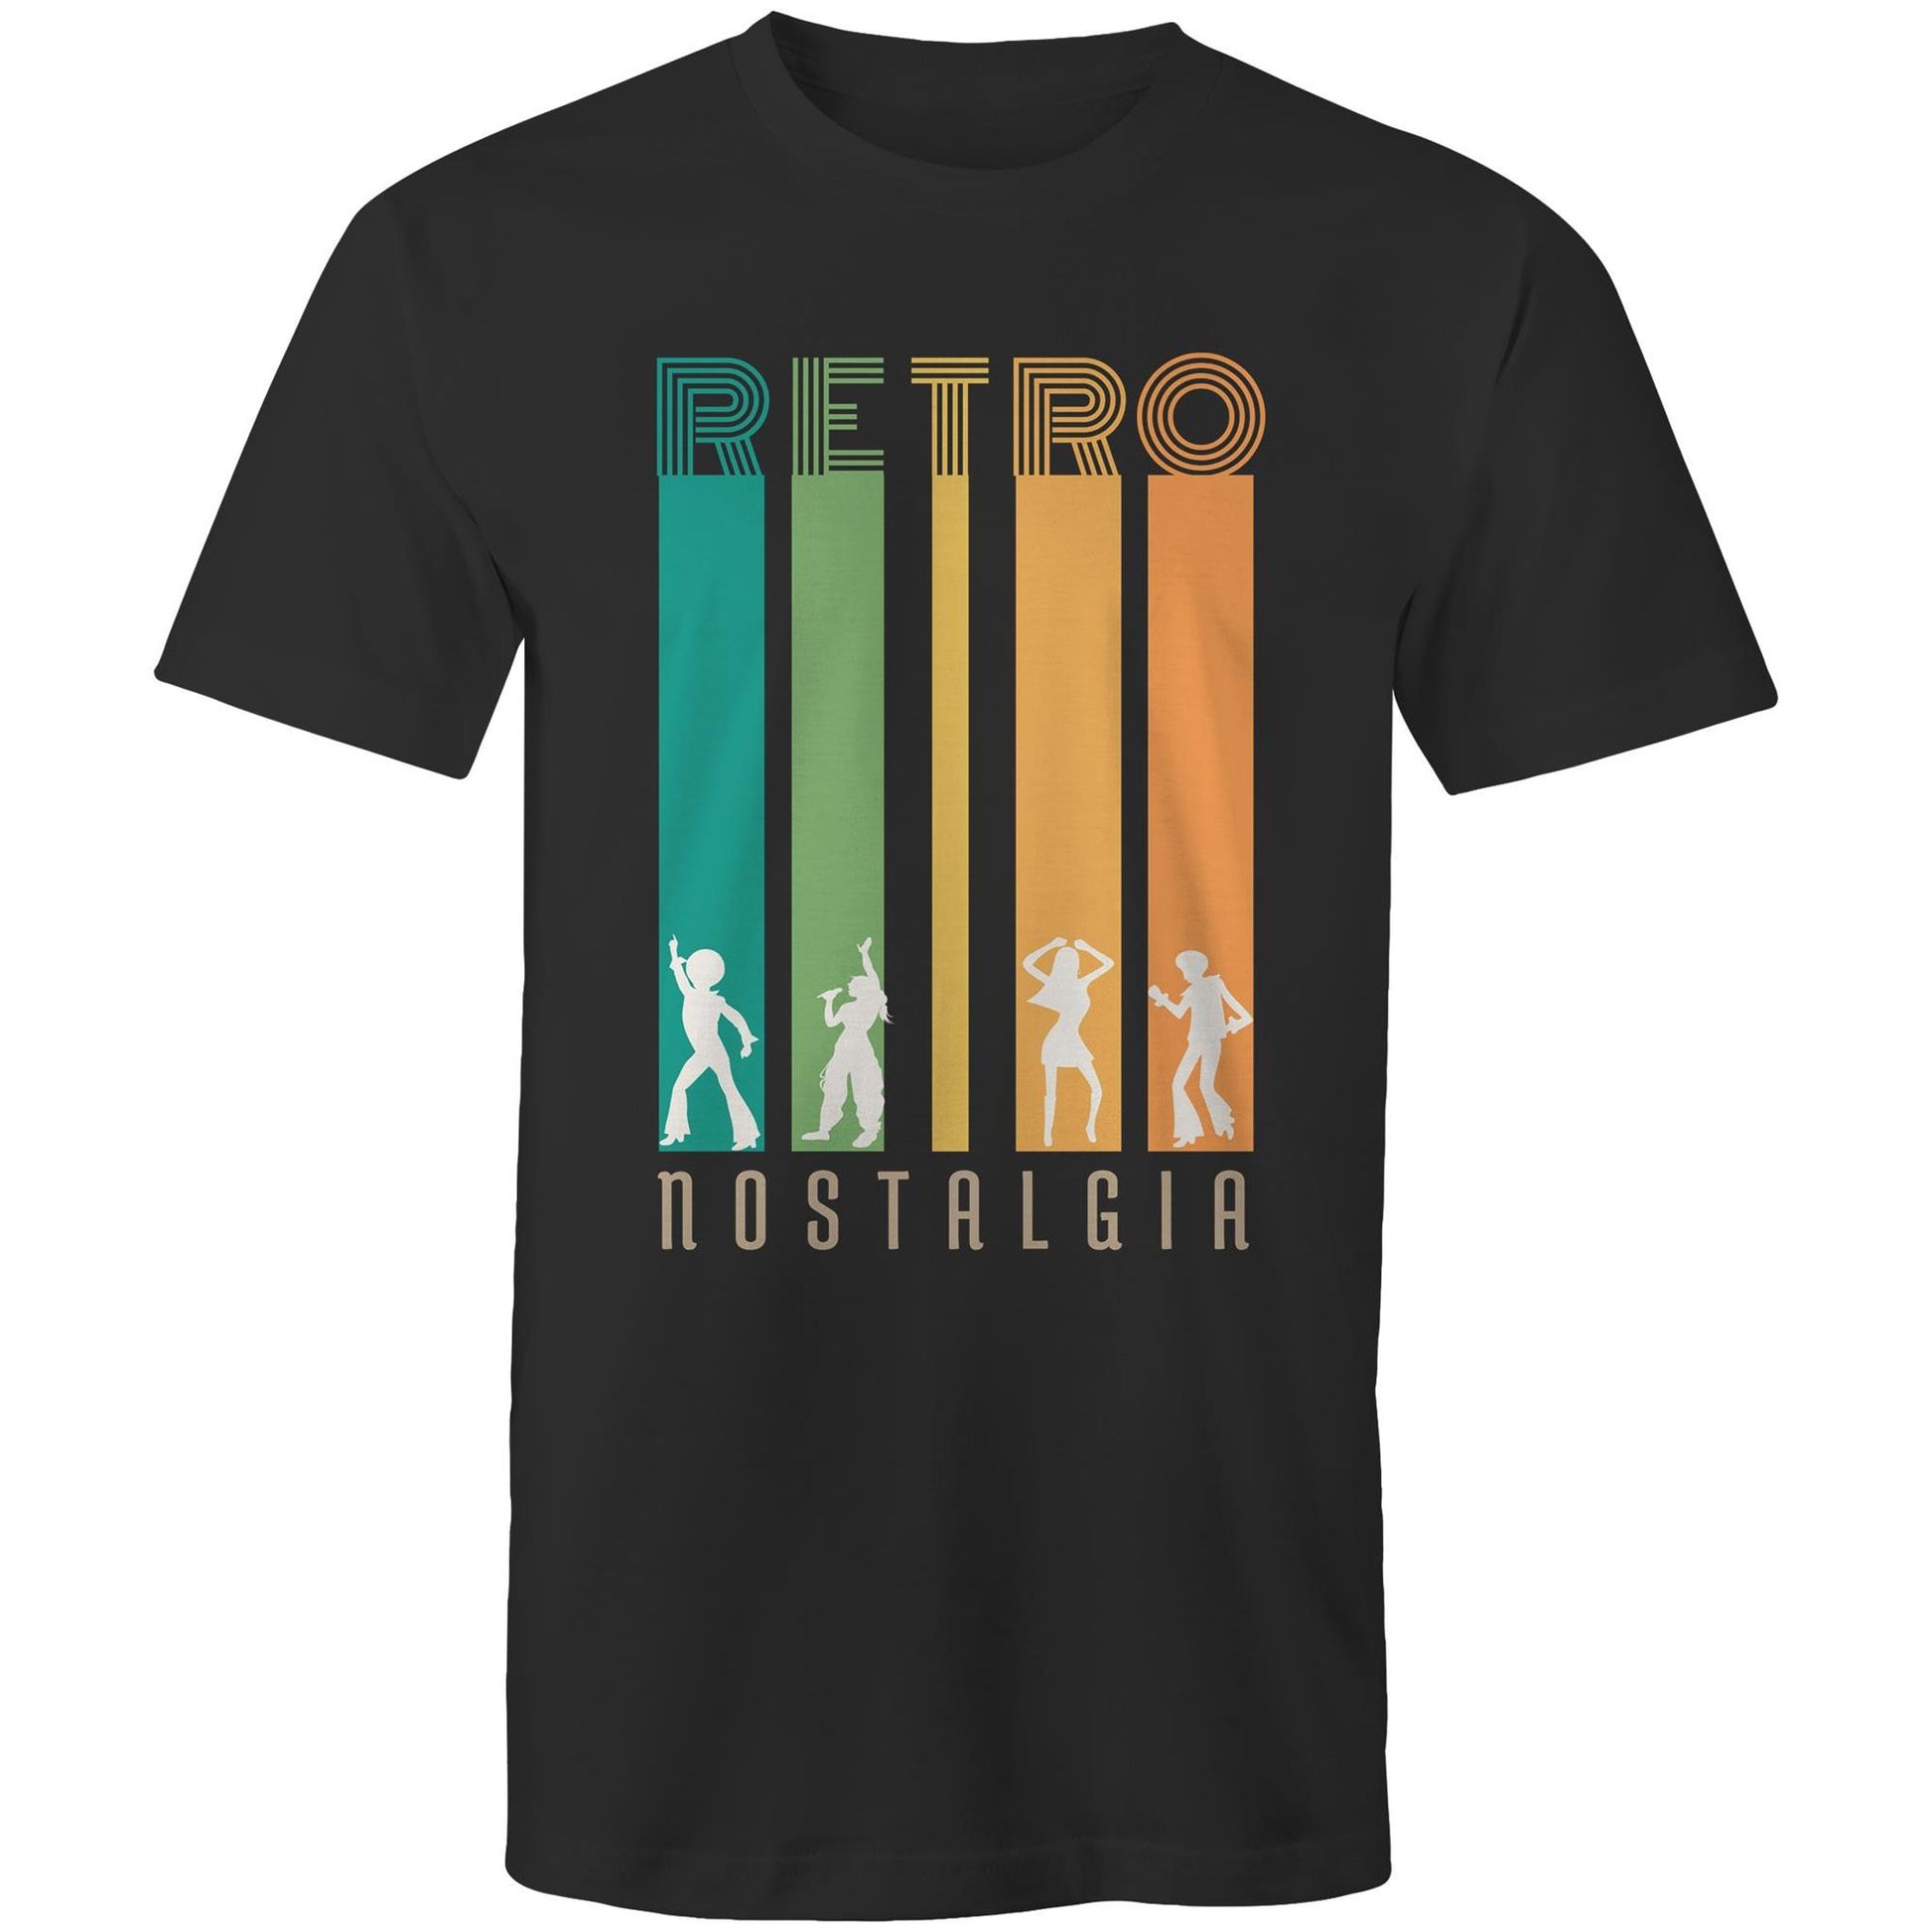 Retro Nostalgia - Mens T-Shirt Black Mens T-shirt Retro